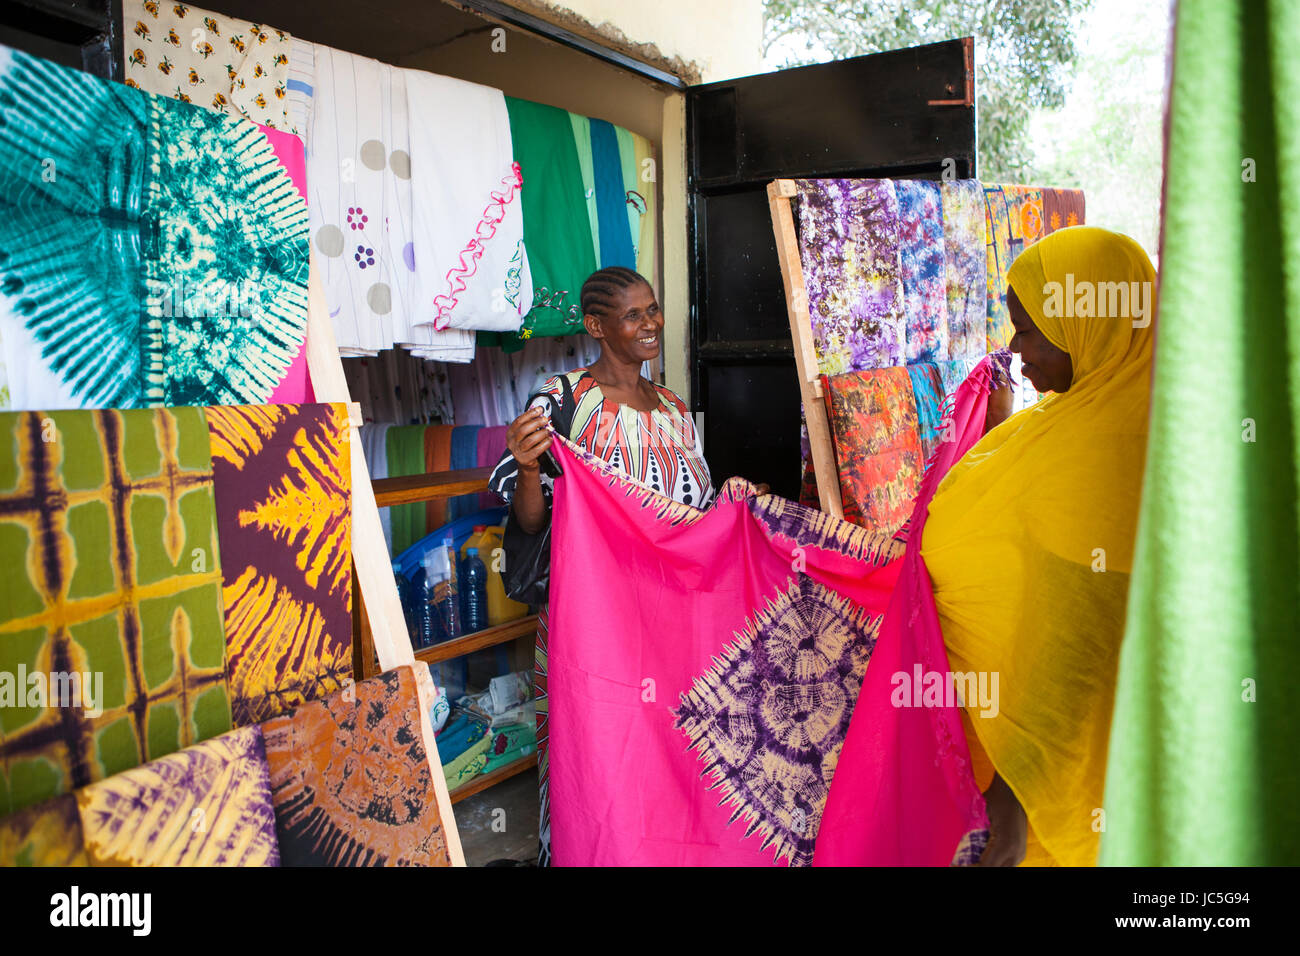 Salma likupila (rechts) im Gespräch mit einem Kunden in Ihren Shop ein weiblicher Small Business batik Shop Besitzer mit einem Kunden, Tansania, Afrika. Stockfoto